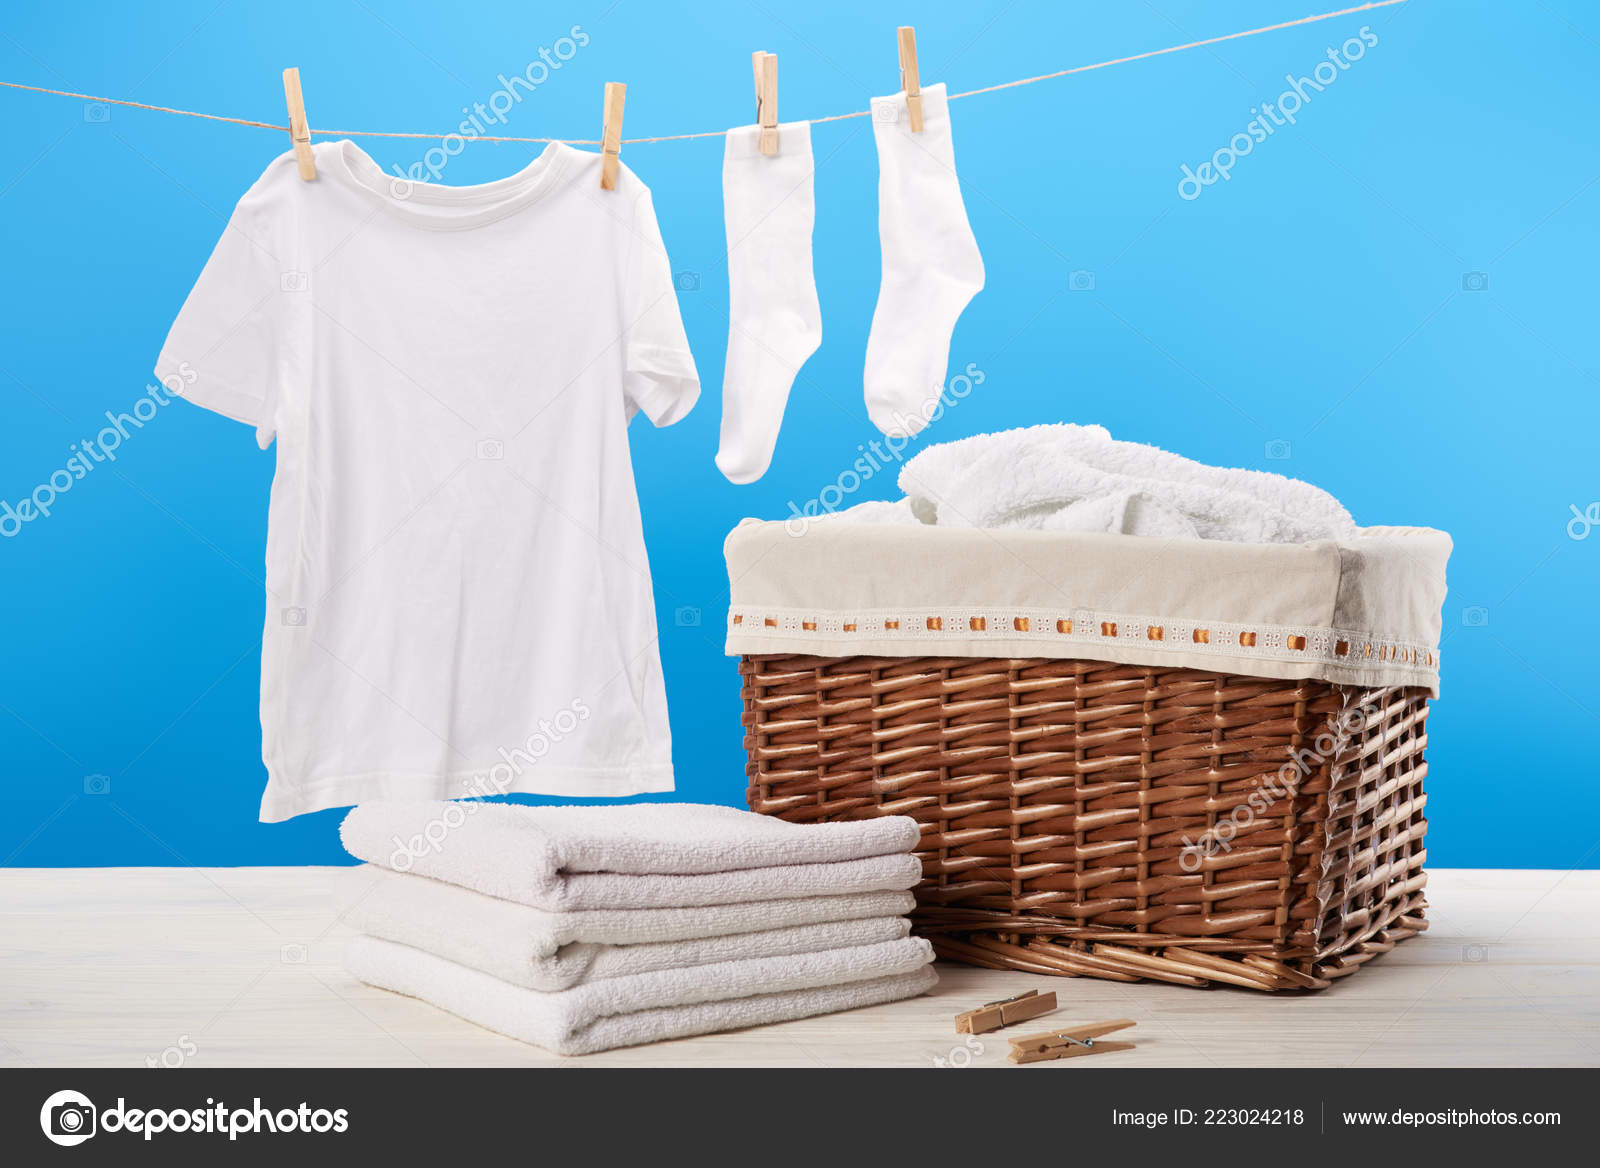 Untuk Mencuci Pakaian Images Libres De Droit Photos De Untuk Mencuci Pakaian Depositphotos